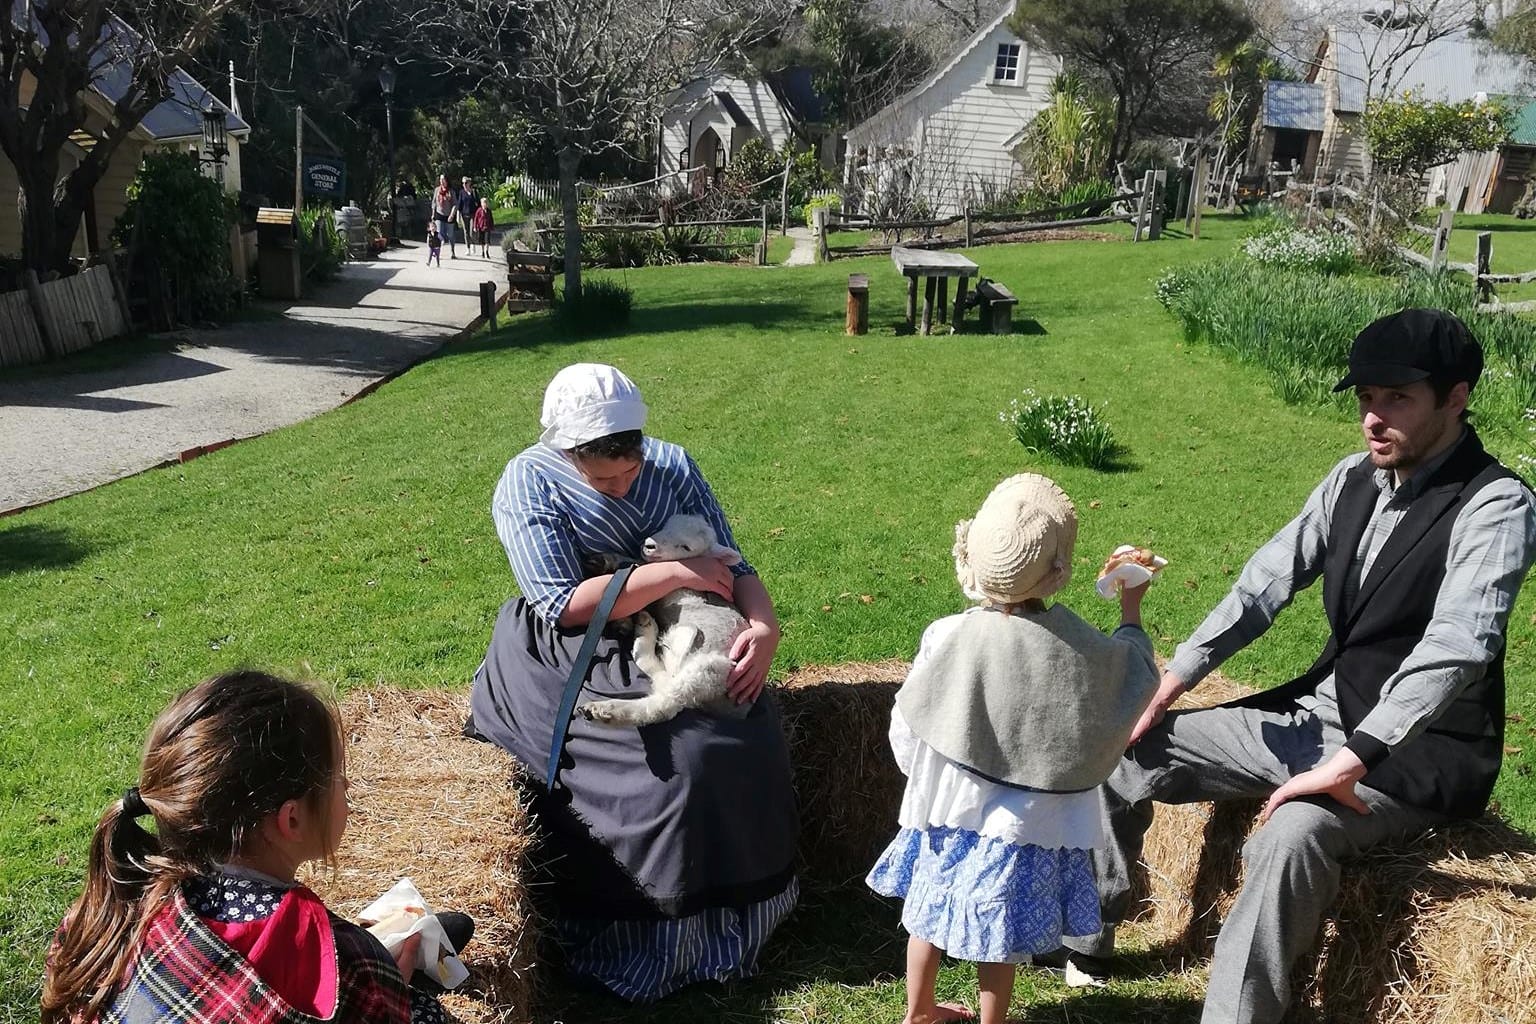 Summer picnic magic at Howick Historical Village